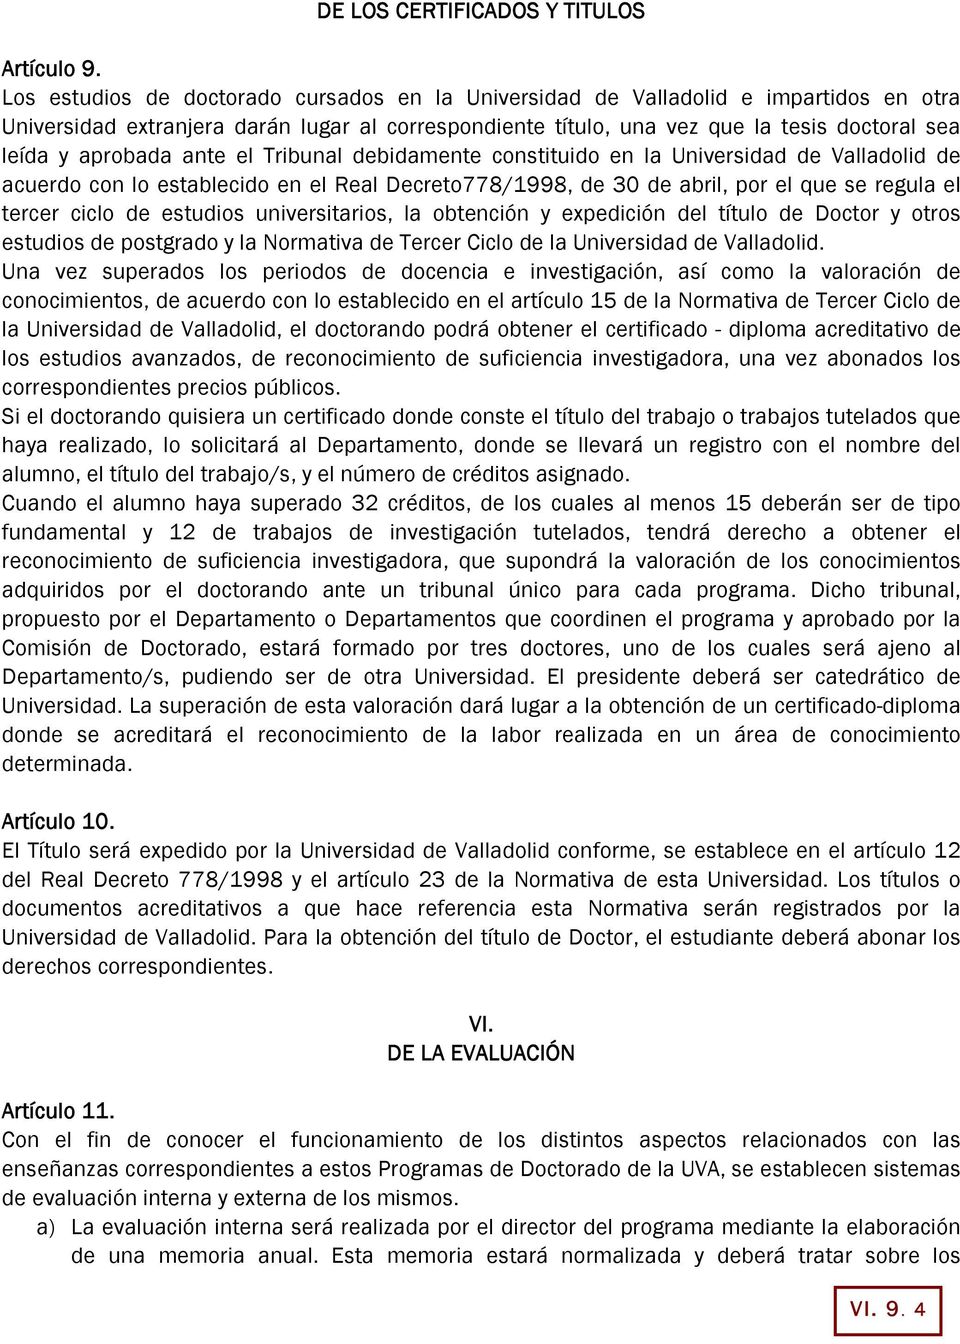 aprobada ante el Tribunal debidamente constituido en la Universidad de Valladolid de acuerdo con lo establecido en el Real Decreto778/1998, de 30 de abril, por el que se regula el tercer ciclo de